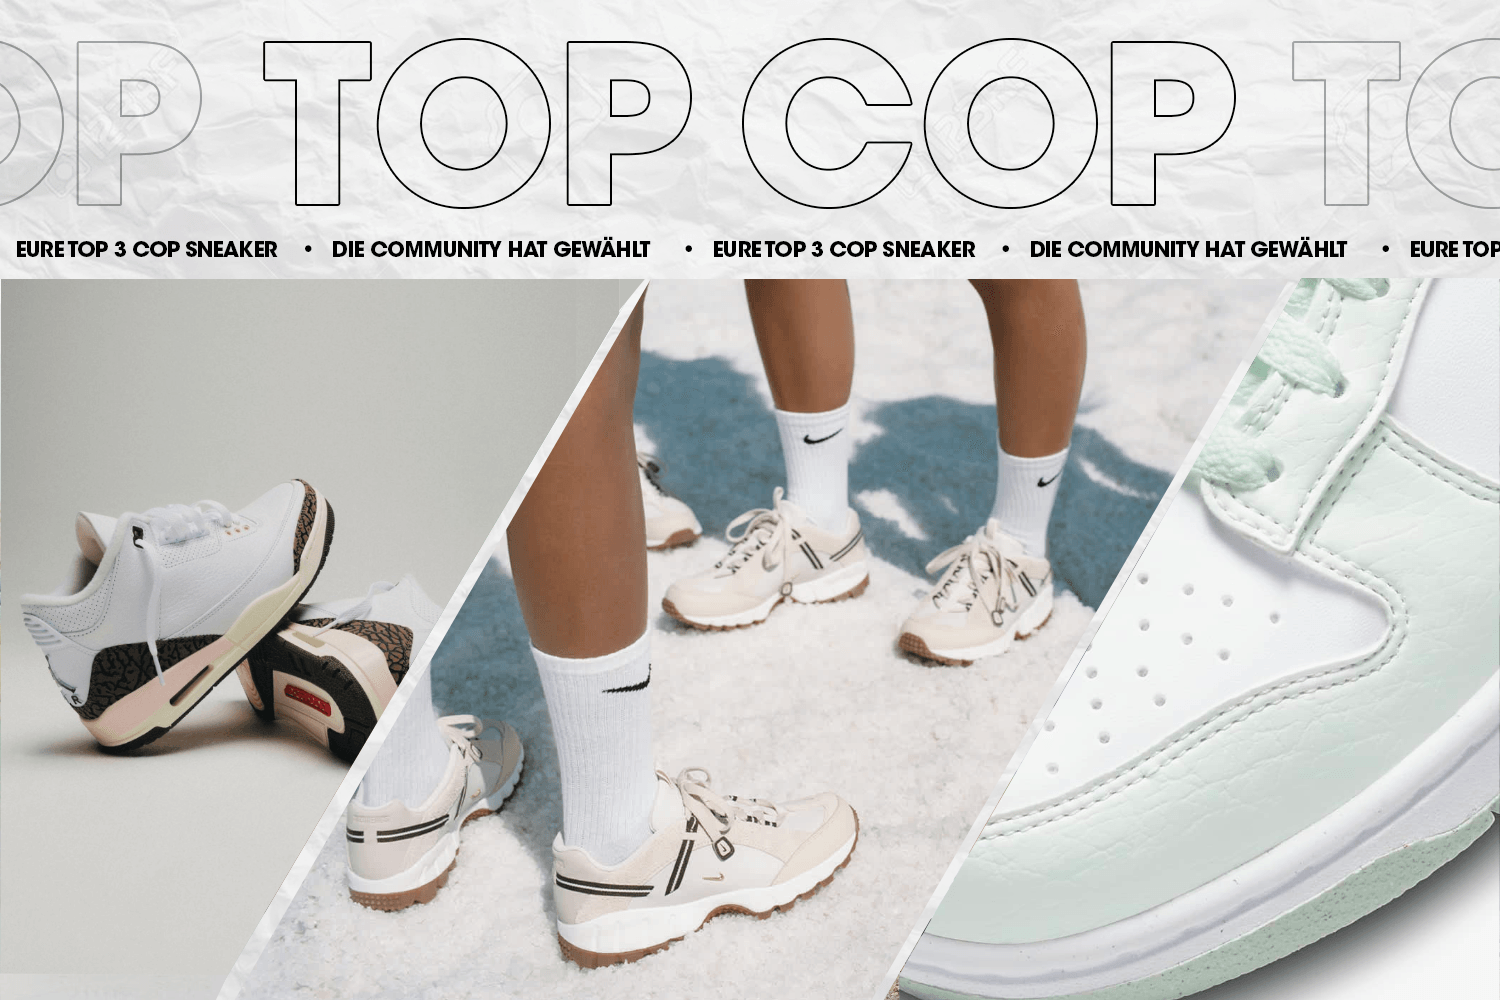 Die Community hat gewählt: Eure Top 3 Cop Sneaker Woche 27